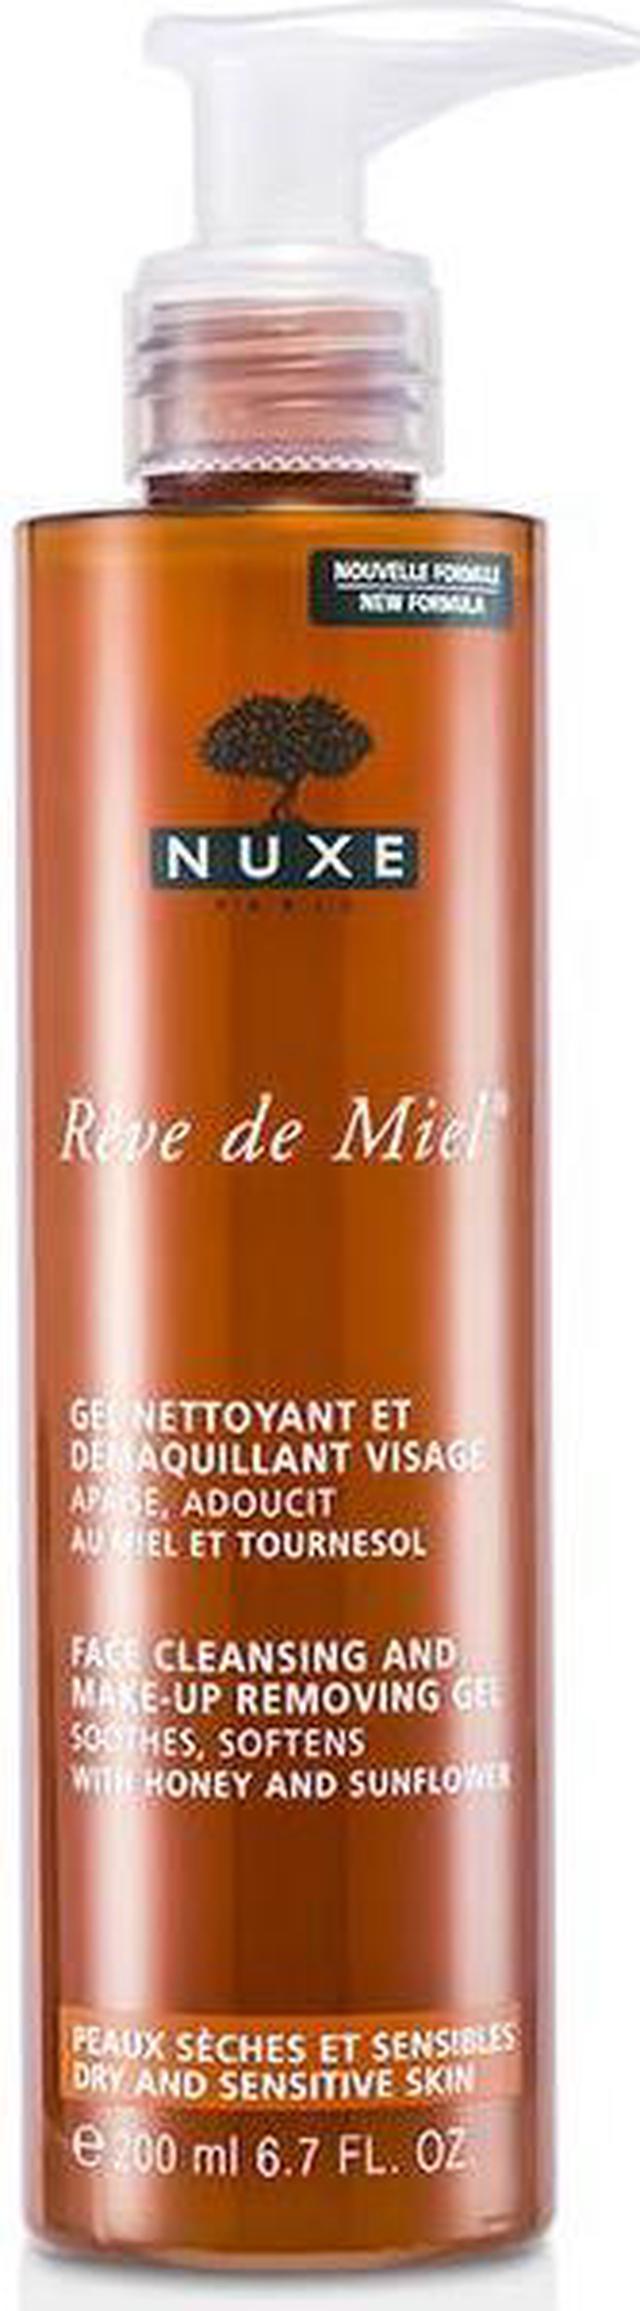 Nuxe - Reve De Miel Face Cleansing & Makeup Removing 200ml/6.7oz